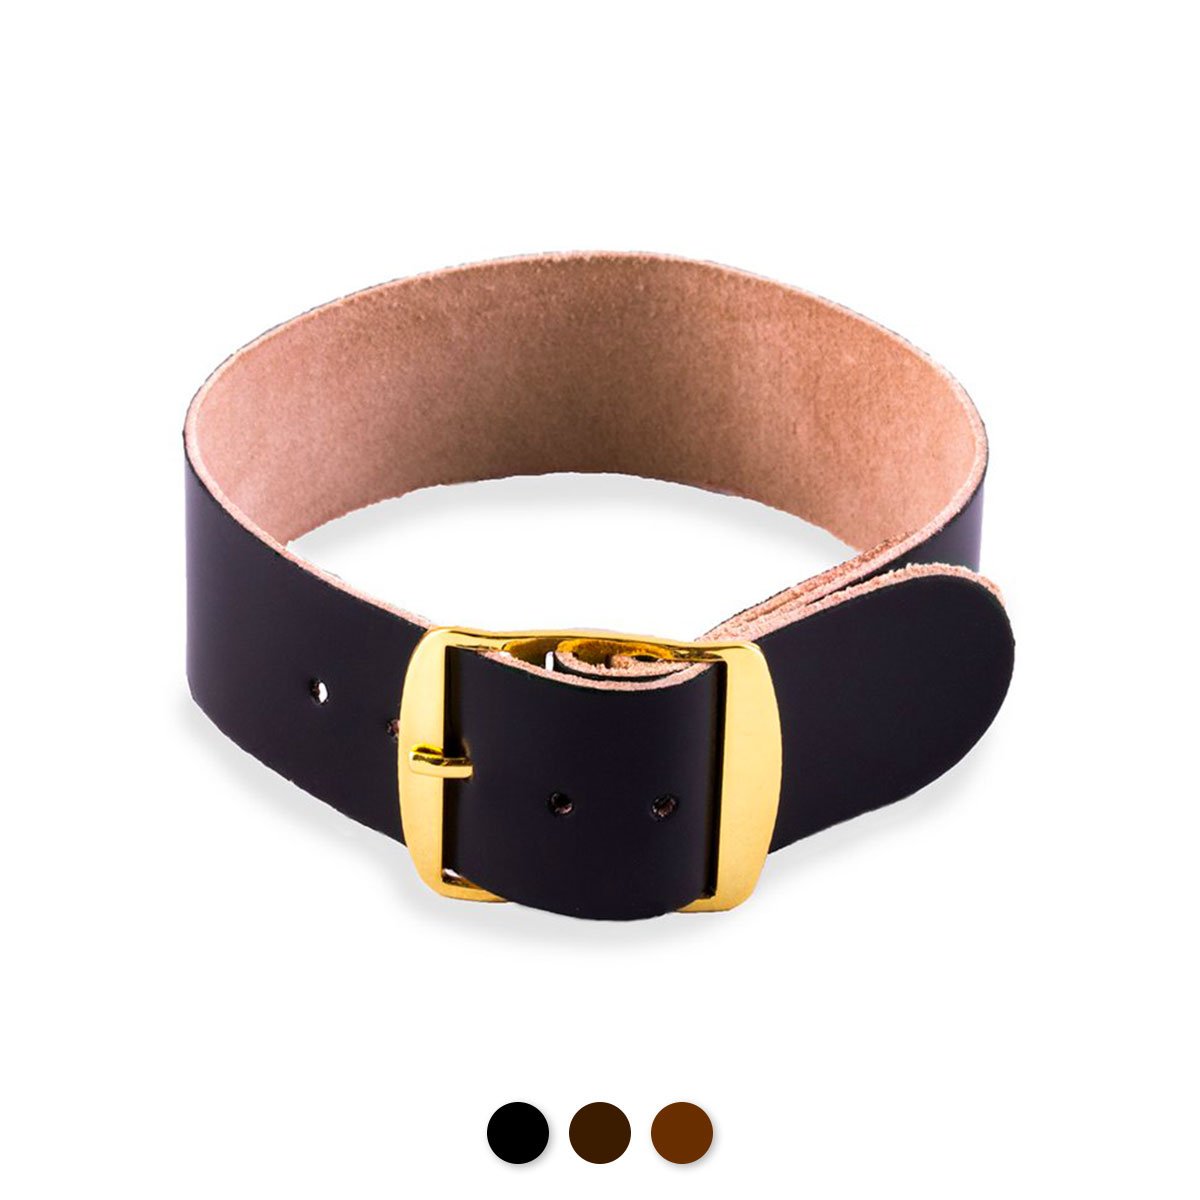 Bracelet-montre Perlon cuir - Cordovan (noir, marron foncé, marron moyen) - watch band leather strap - ABP Concept -